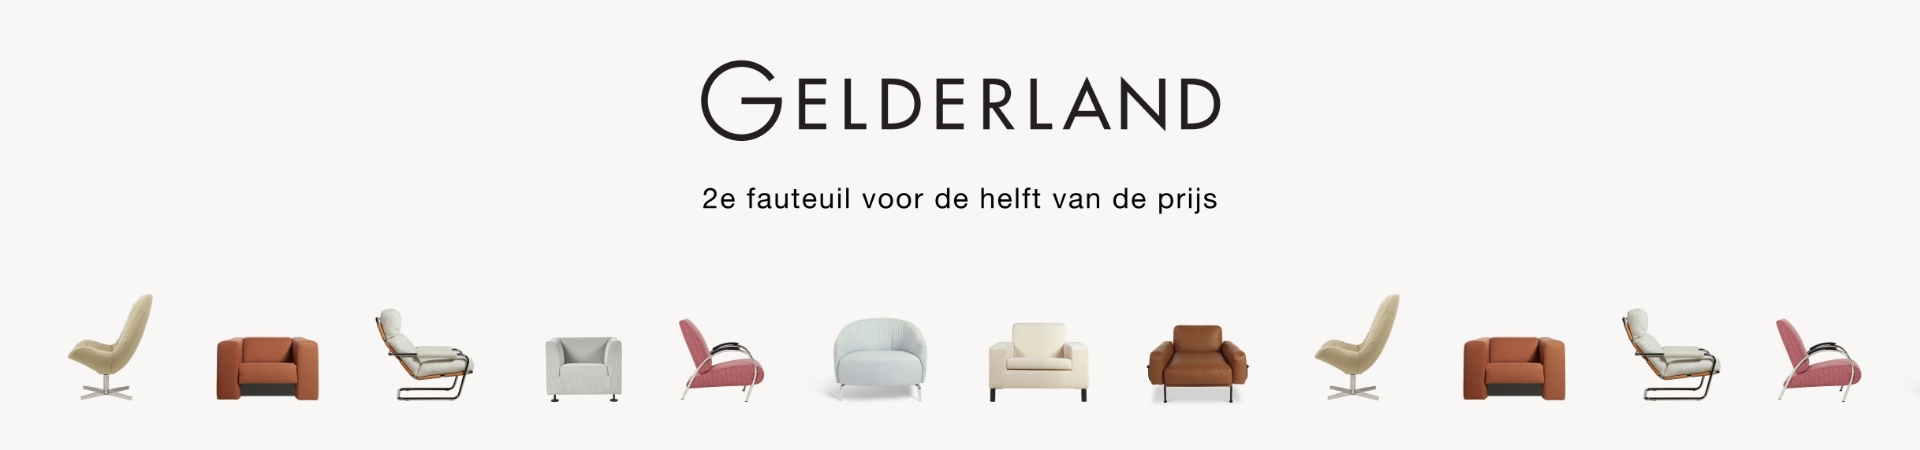 2e fauteuil voor de helft bij Gelderland